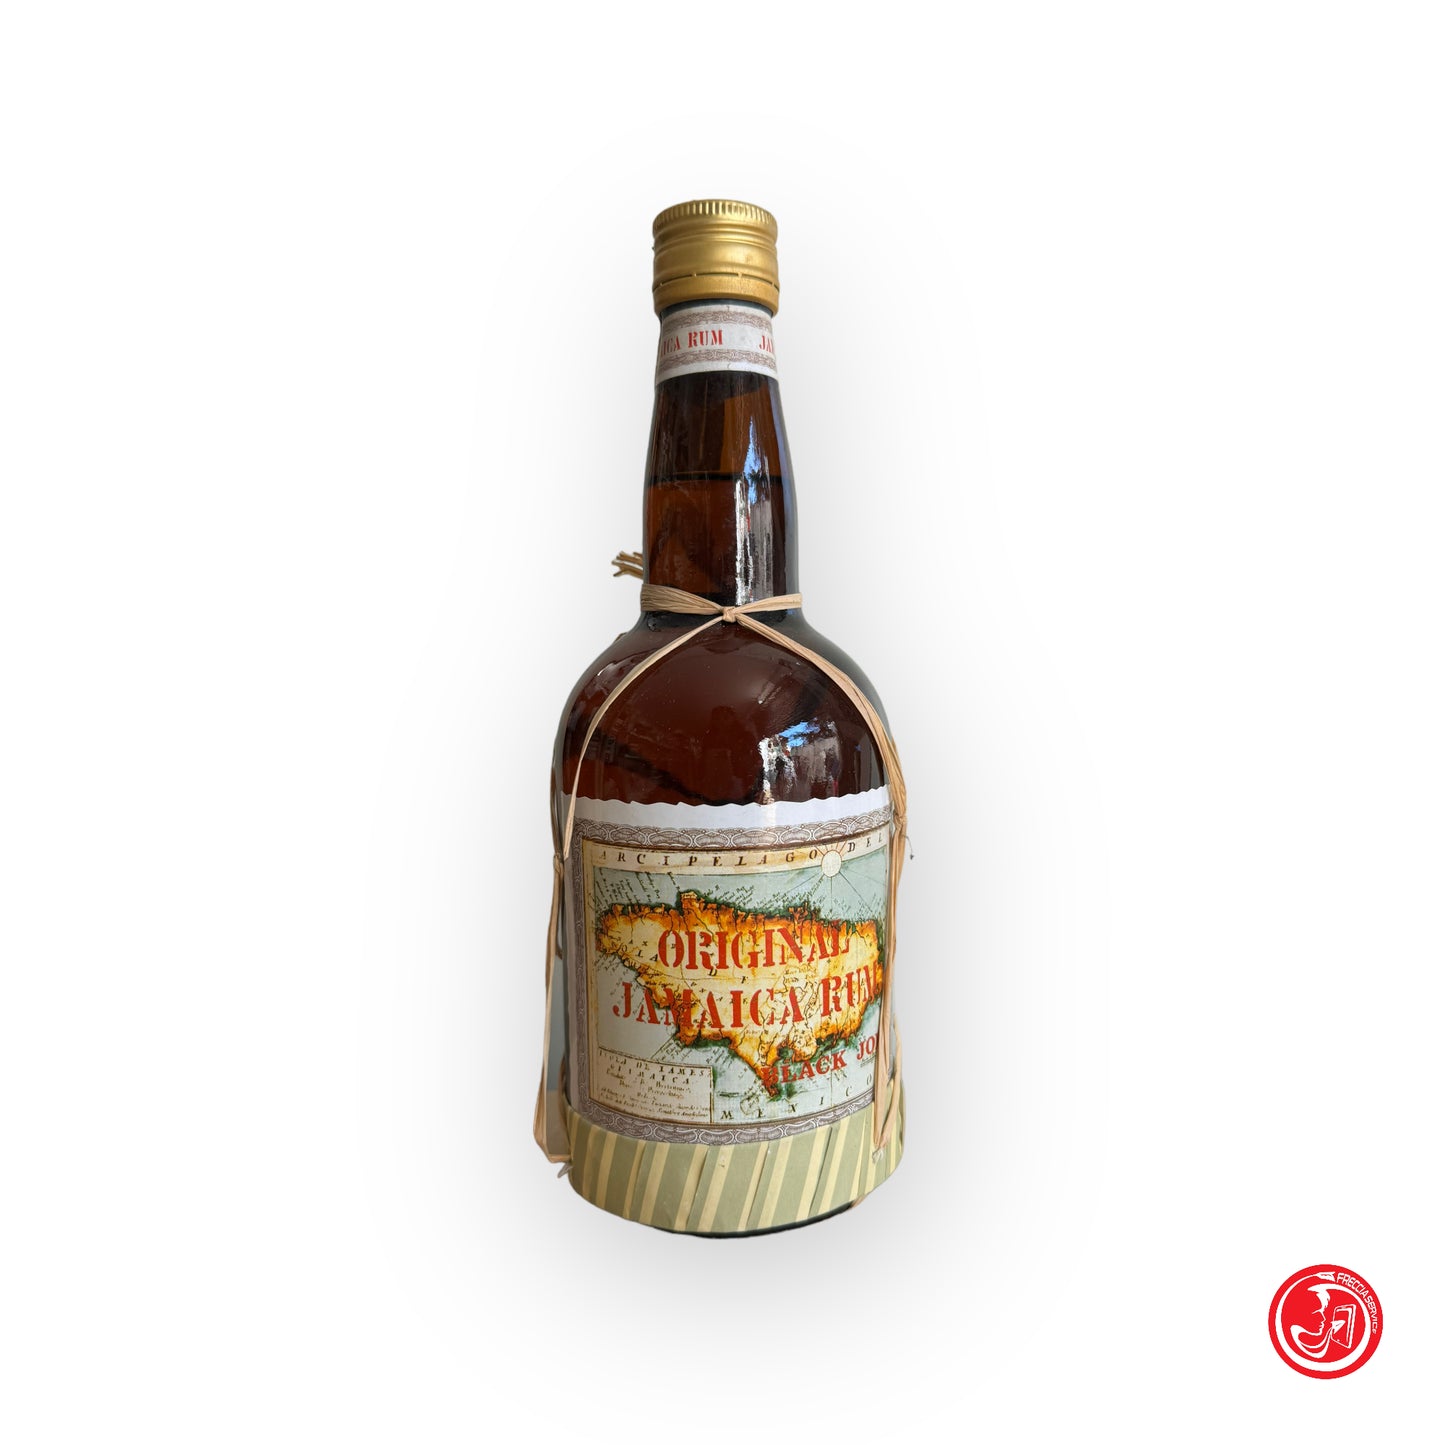 Rum della Jamaica - Original Jamaica Rum black Joe